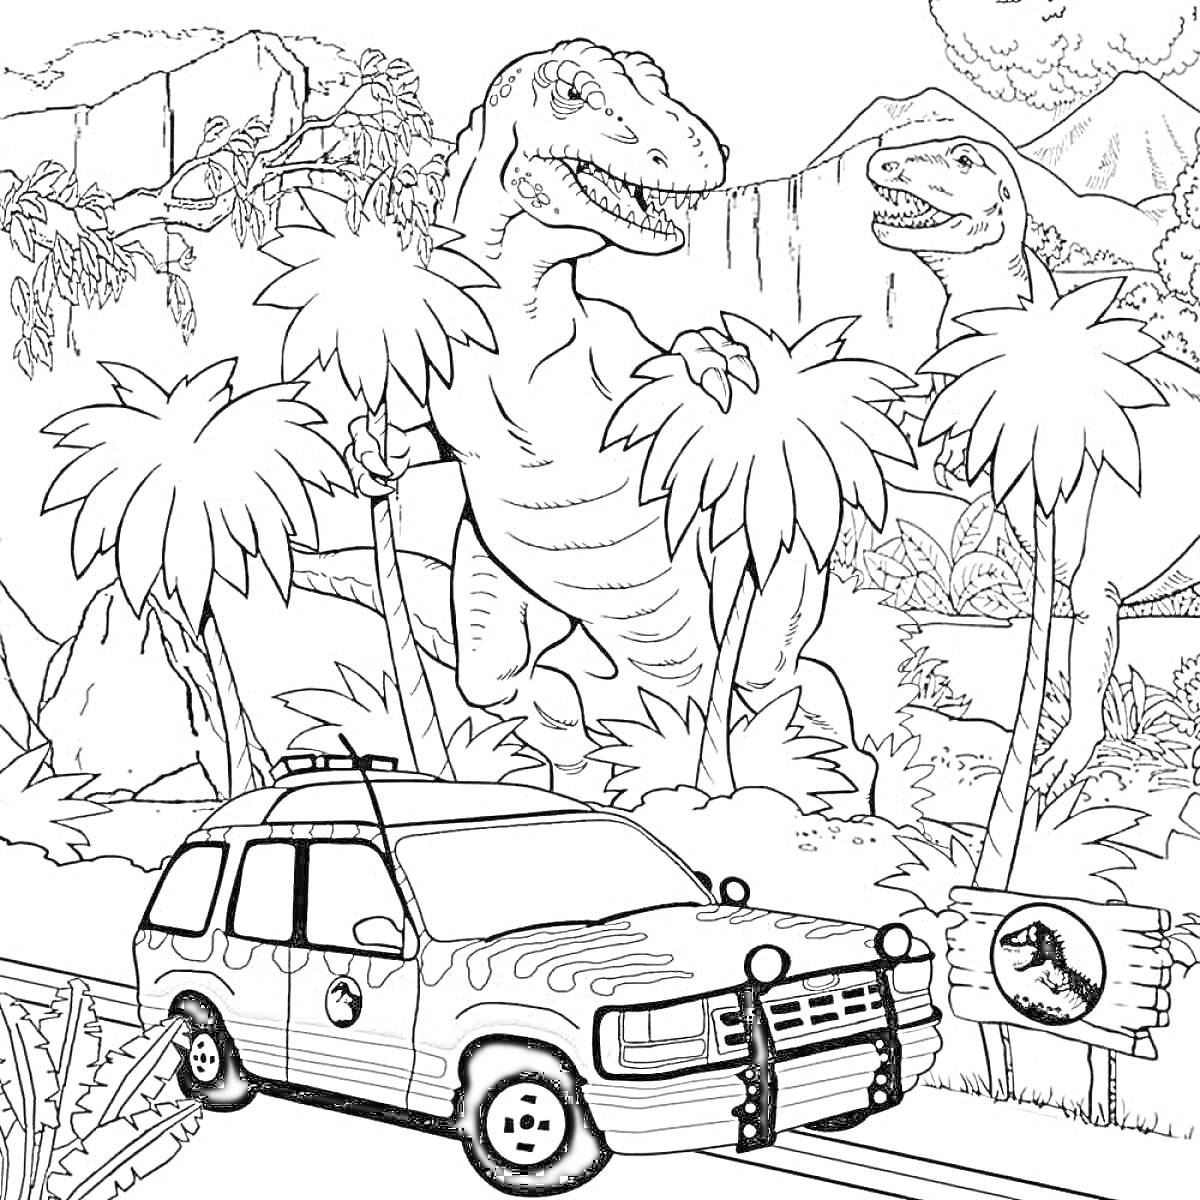 Тираннозавры среди пальм с автомобилем на дороге и табличкой с логотипом